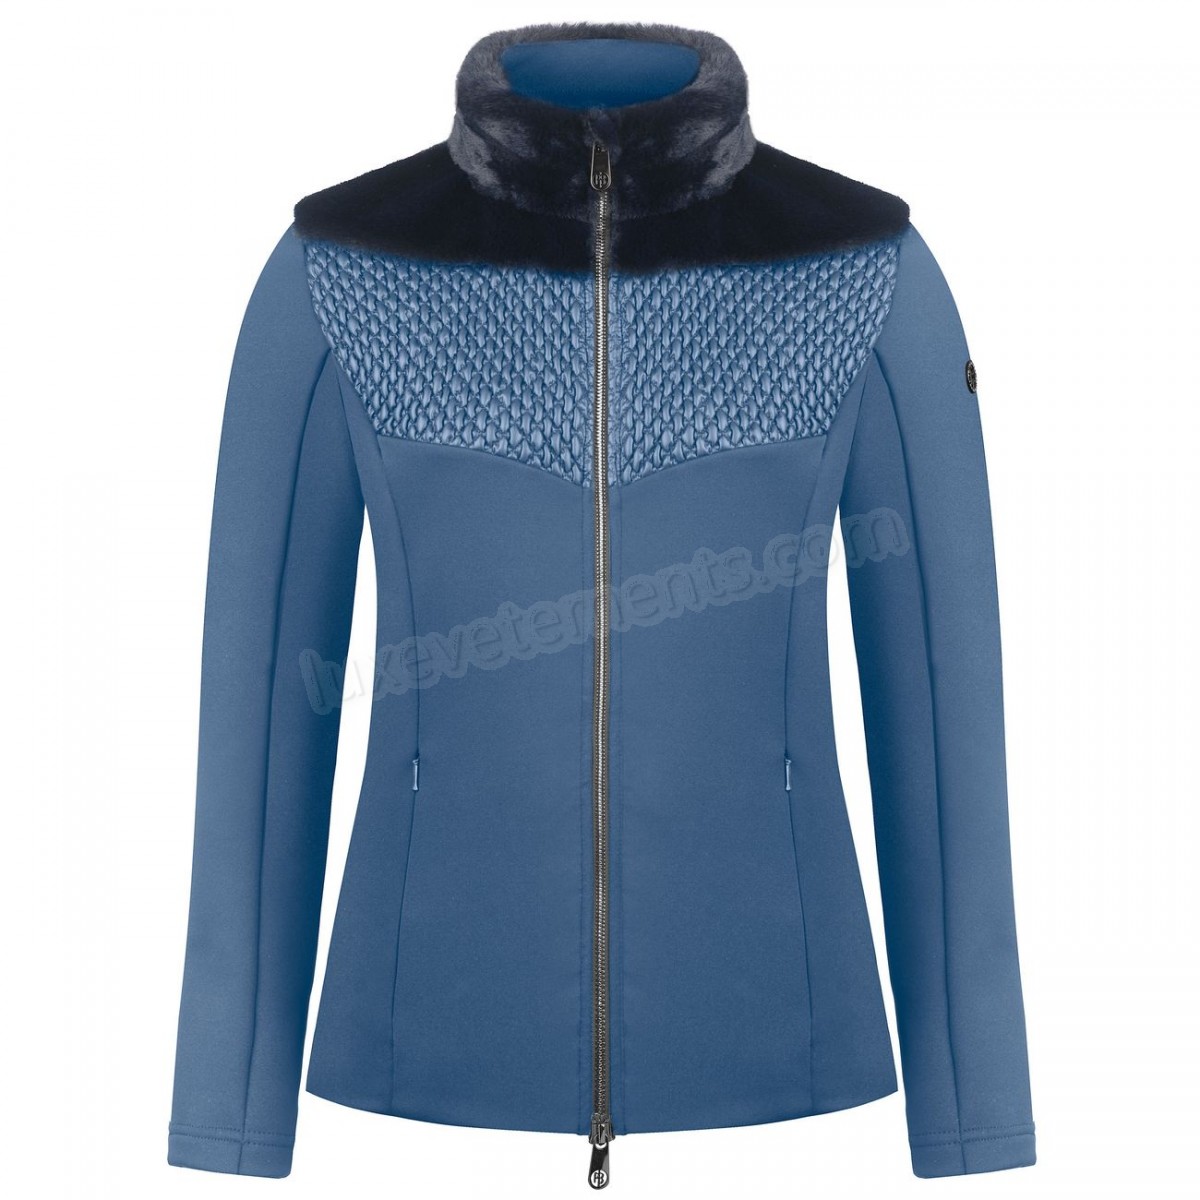 Poivre Blanc-Sports d'hiver femme POIVRE BLANC Veste En Polaire Poivre Blanc Hybrid Stretch Fleece Jacket 1600 Multico Blue Femme Vente en ligne - -1